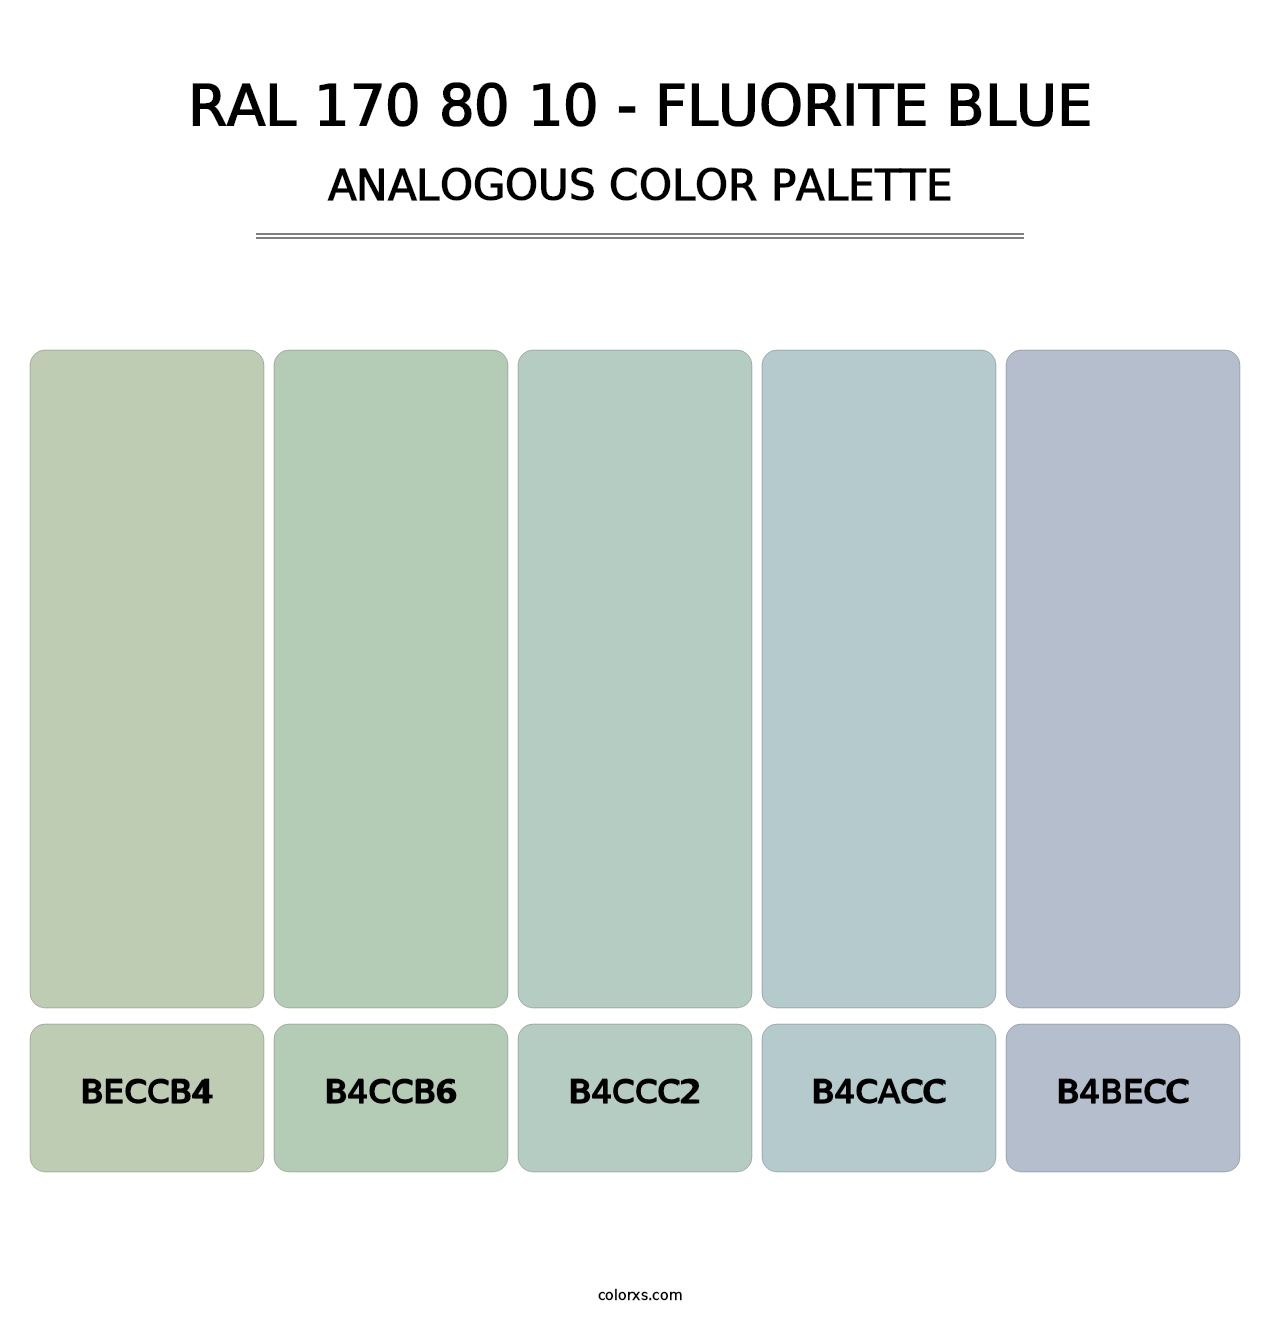 RAL 170 80 10 - Fluorite Blue - Analogous Color Palette